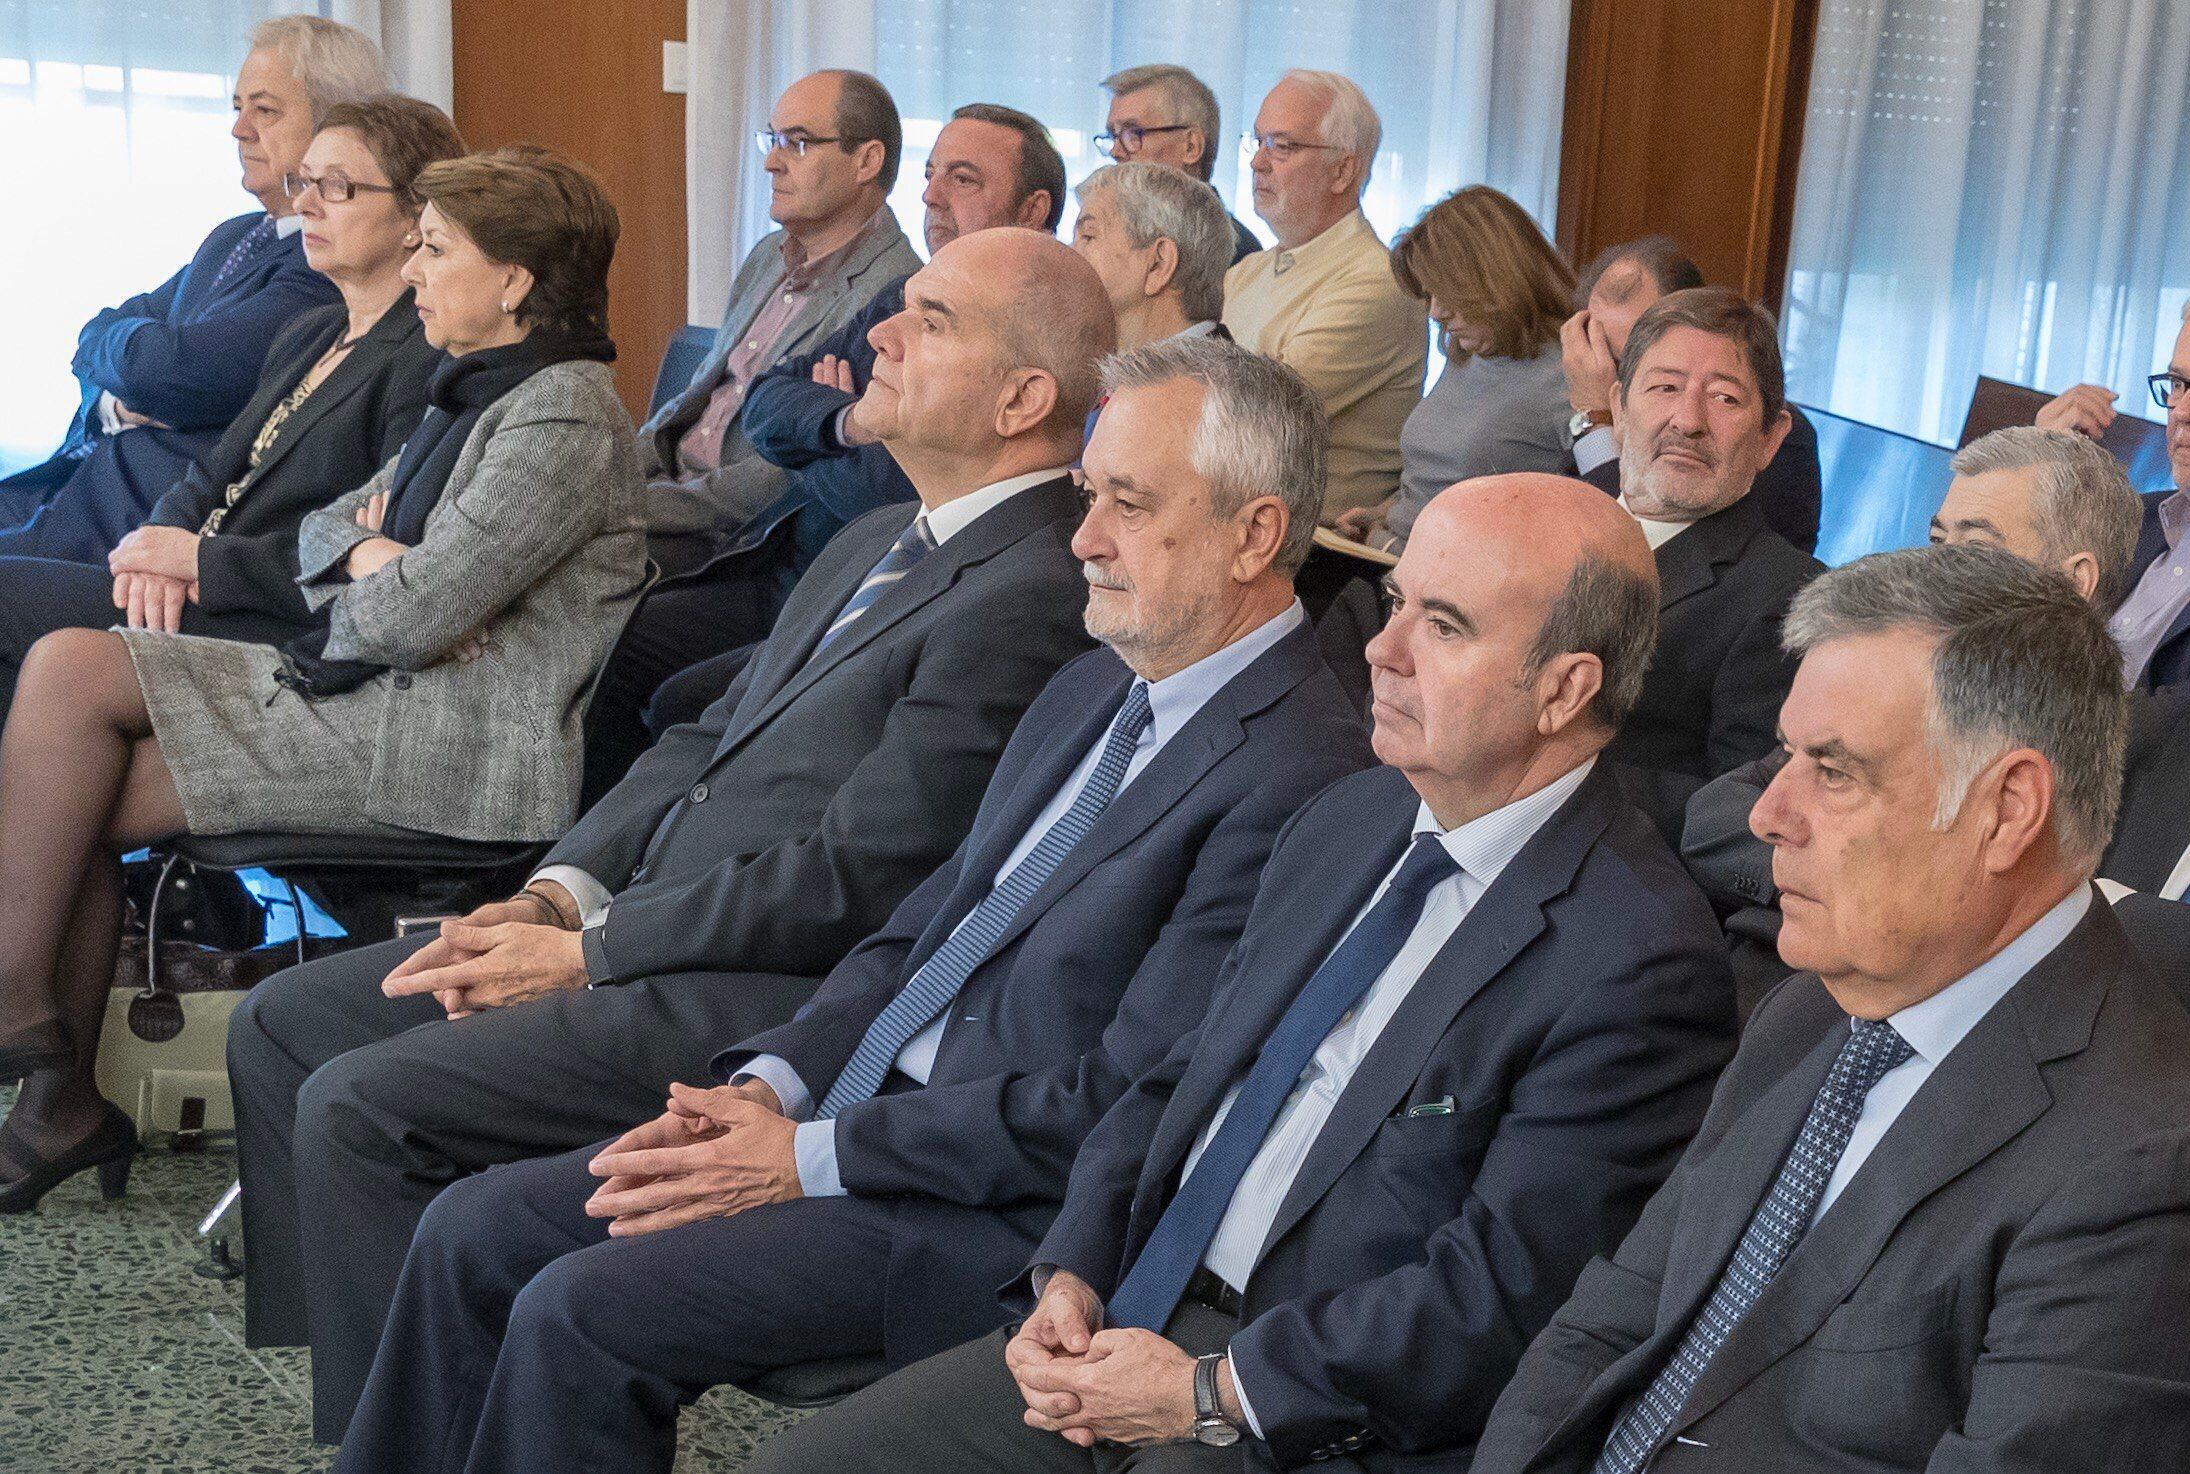 Los ex presidentes andaluces Manuel Chaves (cuarto por la derecha) y José Antonio Griñán (tercero por la derecha) y los ex consejeros Gaspar Zarrías (segundo por la derecha) y José Antonio Viera (derecha), junto a los 22 ex altos cargos de la Junta de Andalucía, sentados en la sala de la Audiencia de Sevilla en diciembre de 2017.